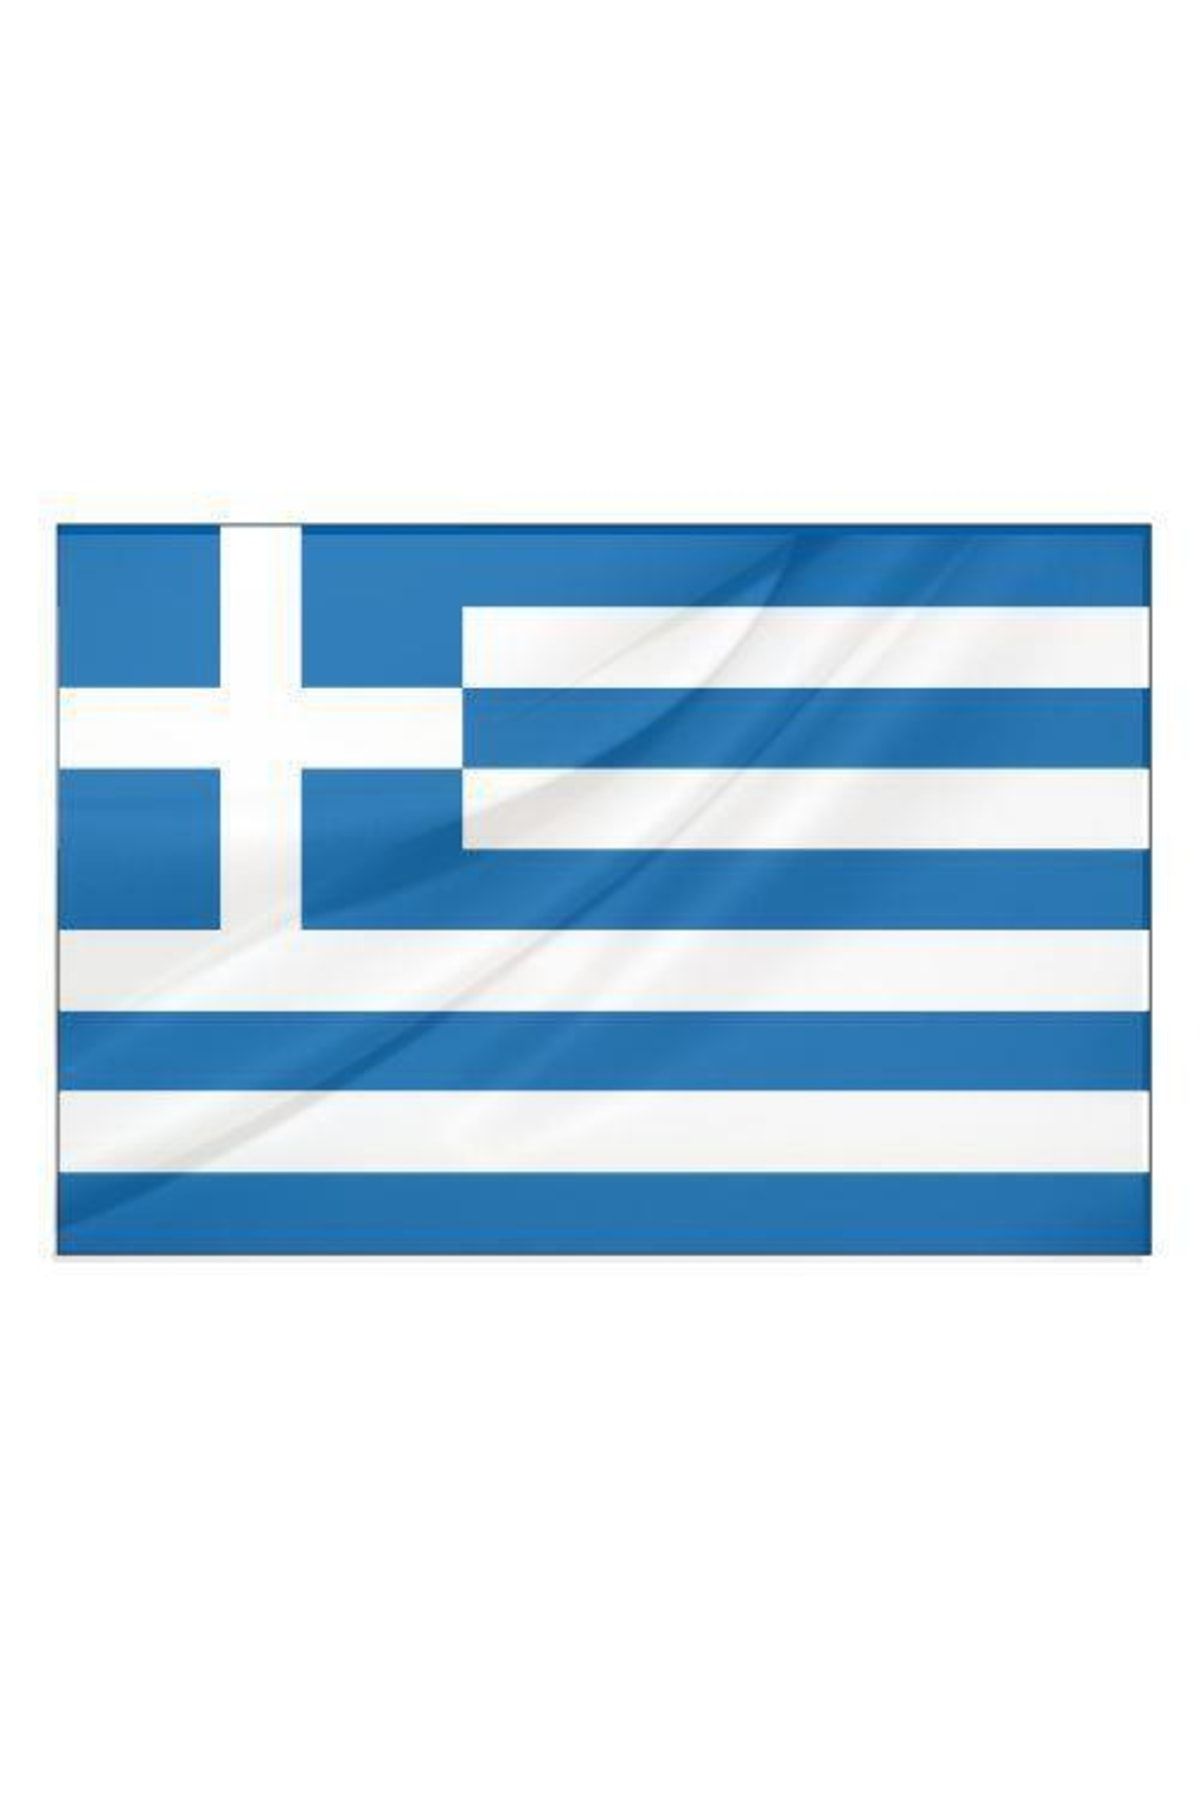 sb sistem bayrak Yunanistan Gönder Bayrağı 200x300cm